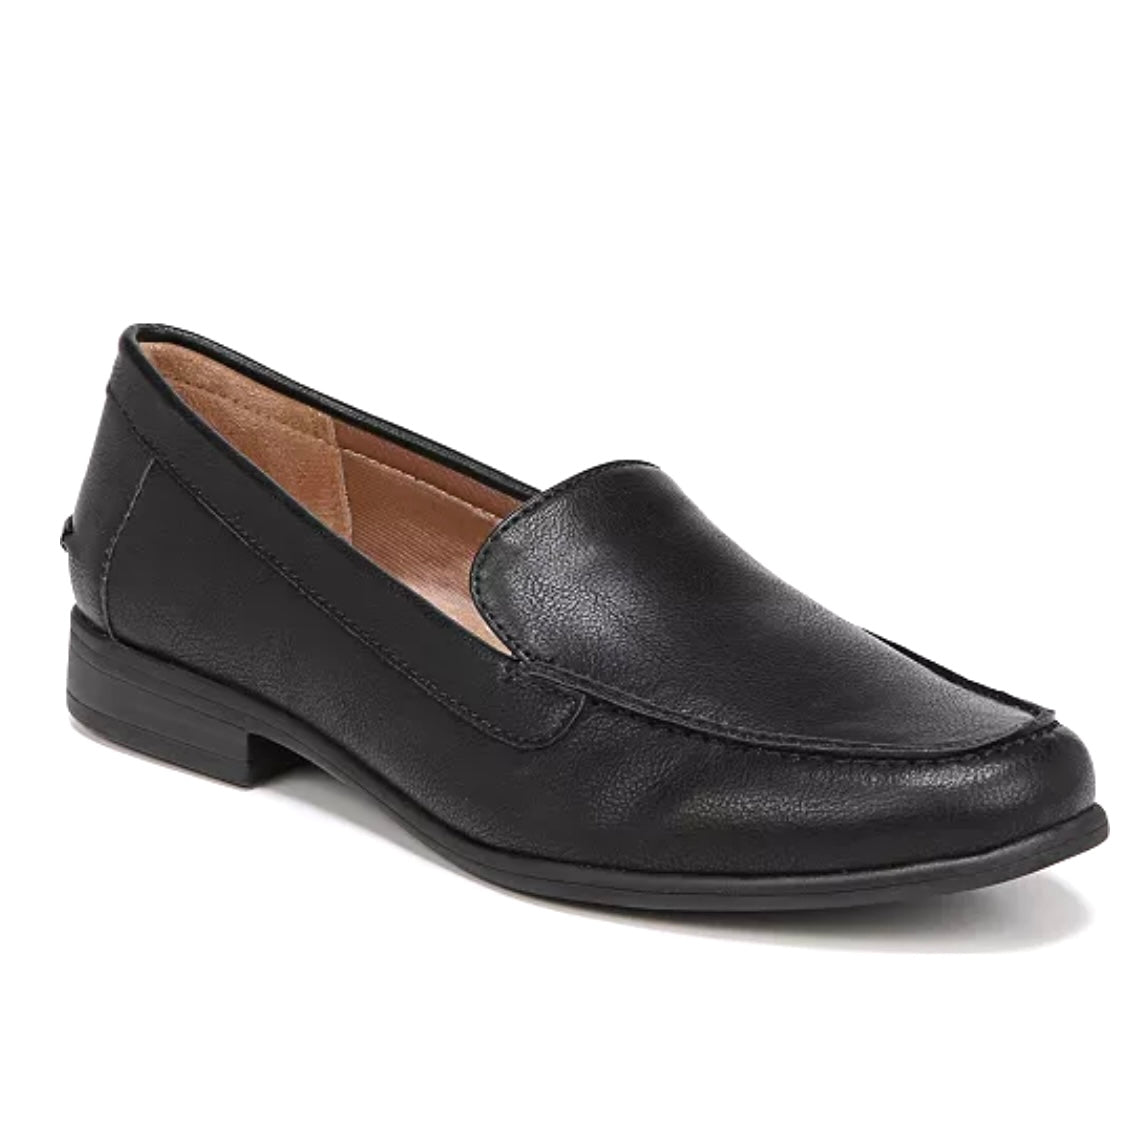 MARGOT Slip On Flats Black Loafer Women's Shoes